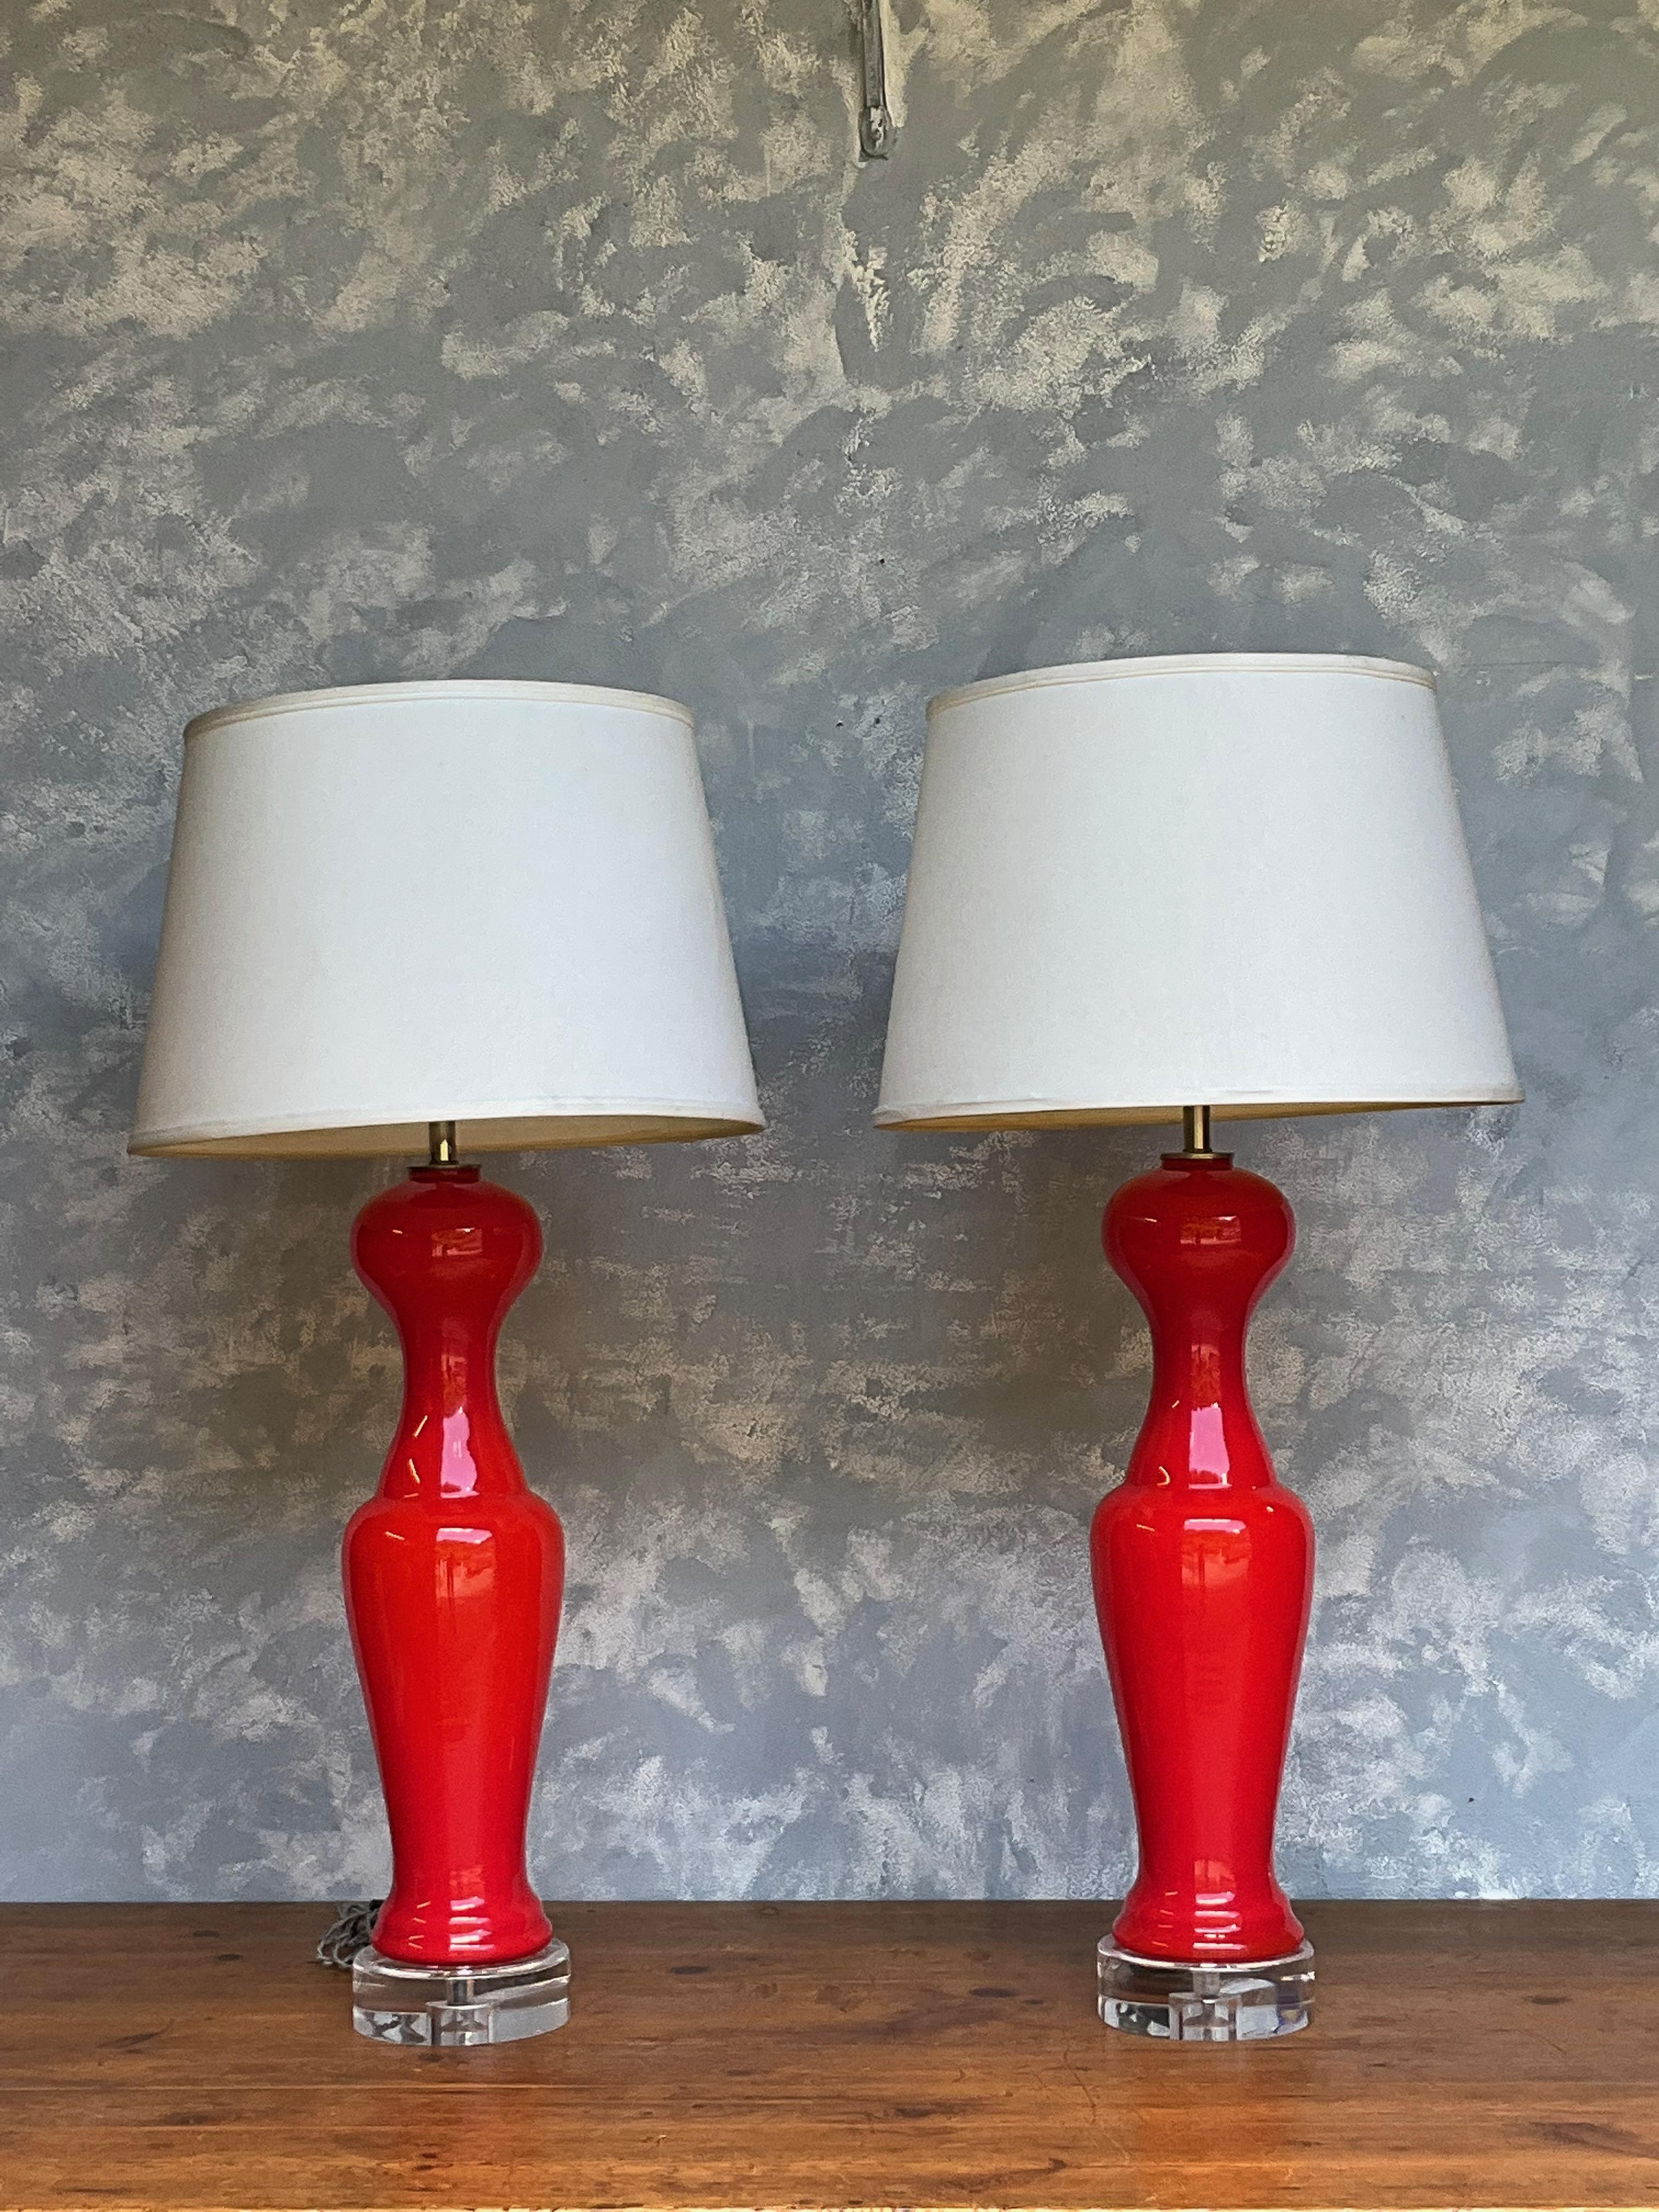 Cette paire de lampes italiennes des années 1950 en verre de Murano en forme de pion est un brillant exemple du design et de l'élégance modernes du milieu du siècle dernier. Ces pièces étonnantes présentent une teinte rouge-orange brillante qui